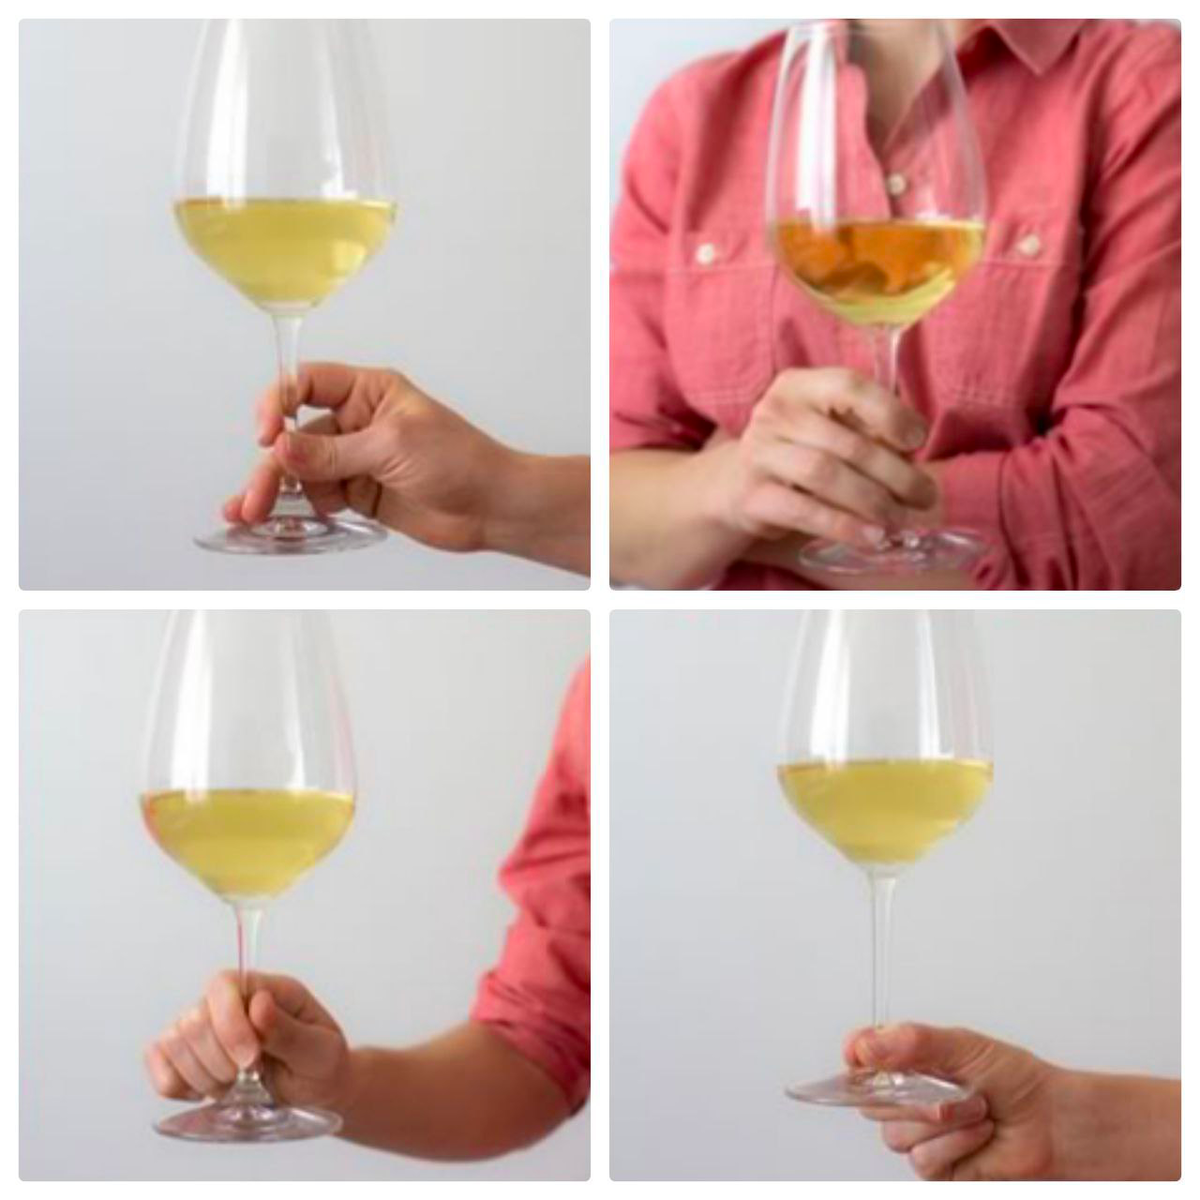 Как держать бокал с вином правильно по этикету фото